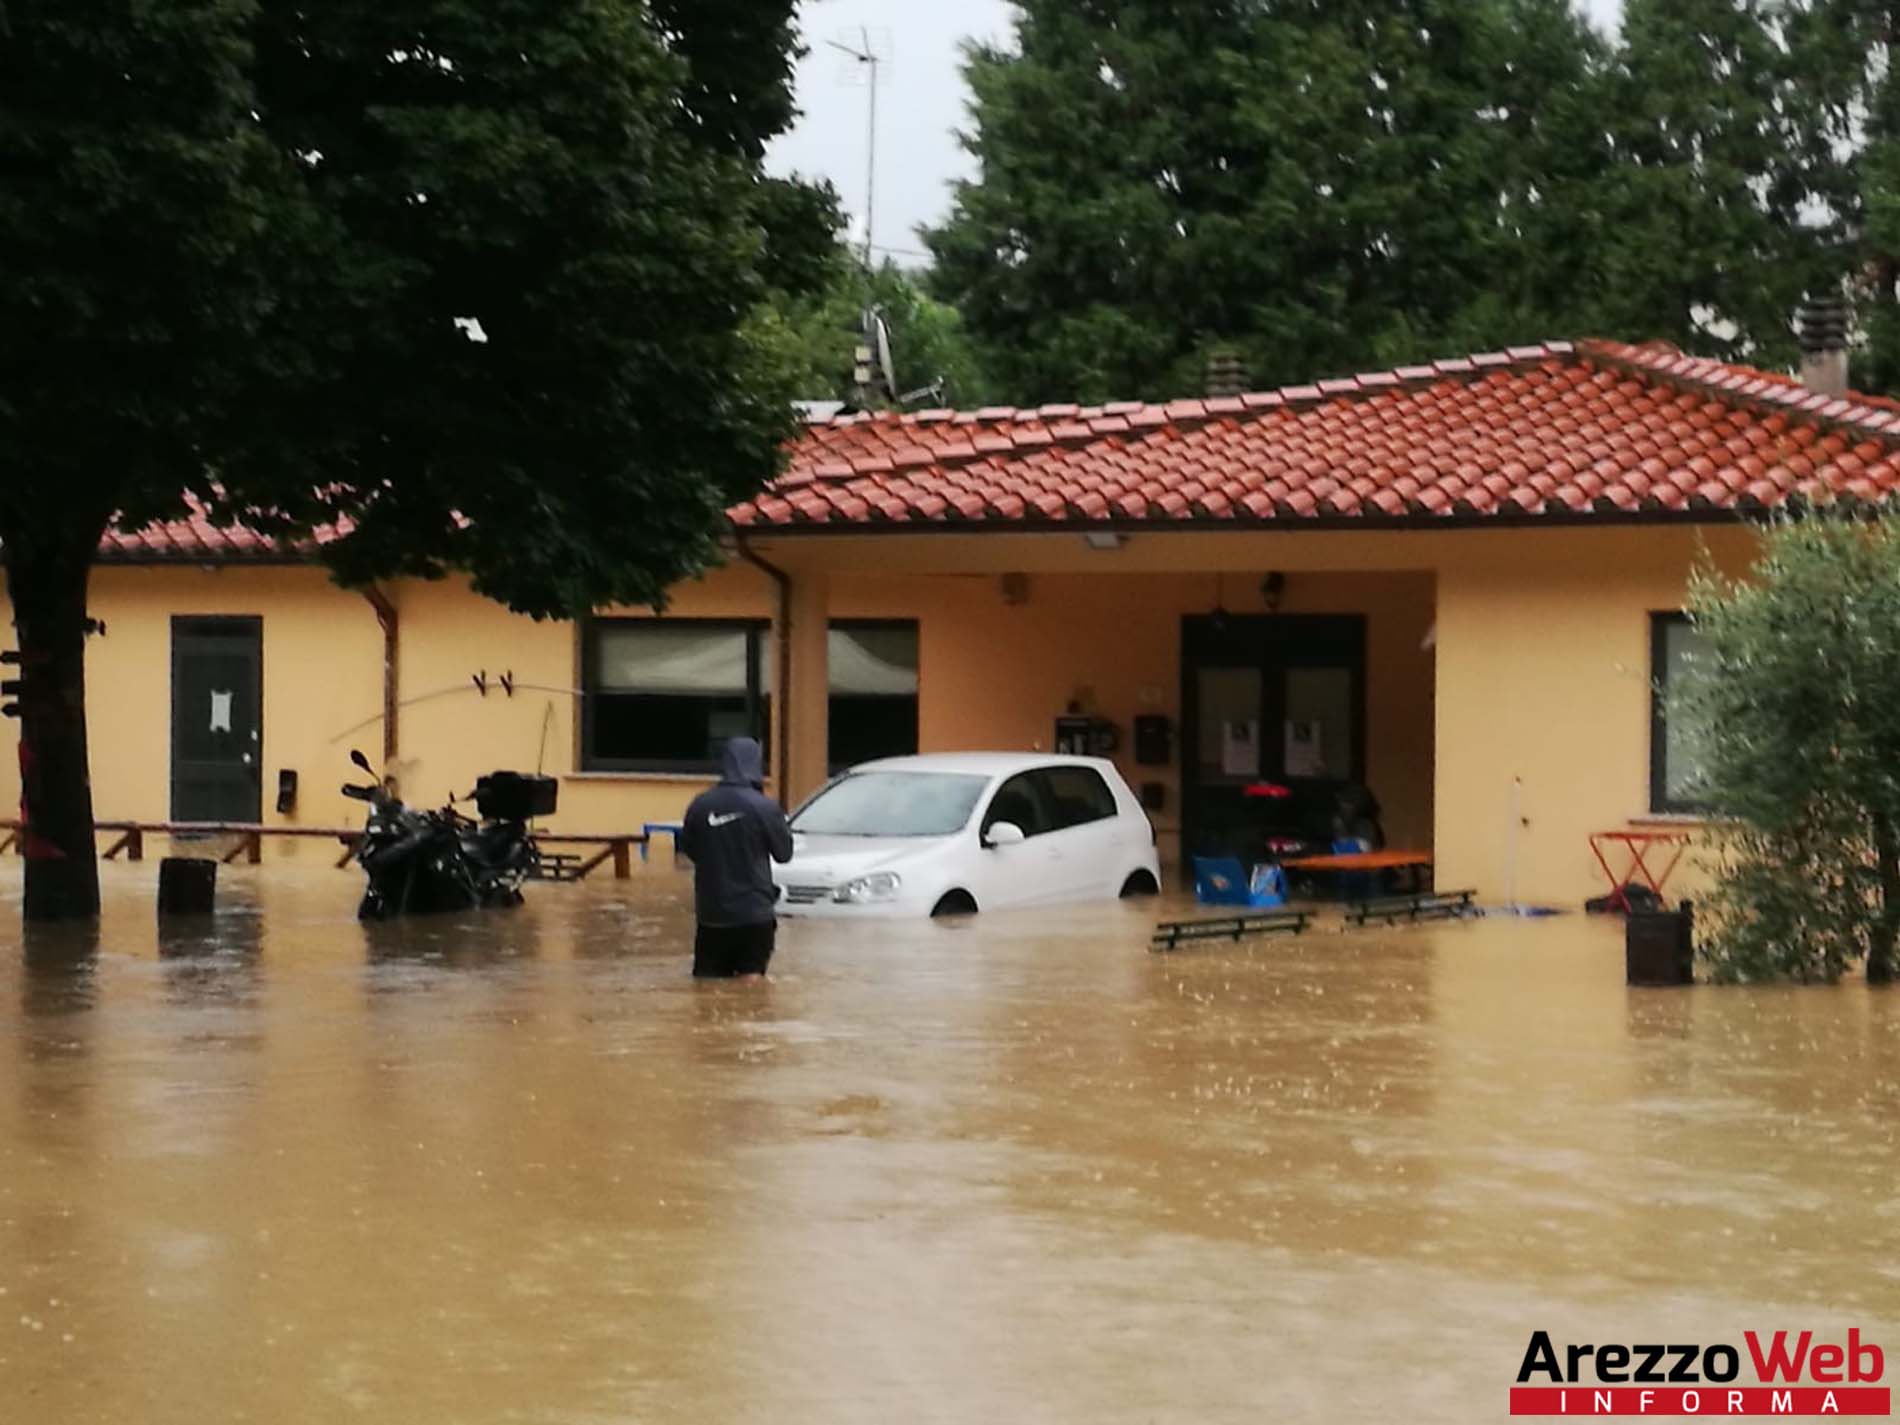 Alluvione di fine luglio, il Comune in attesa della procedura per il risarcimento danni